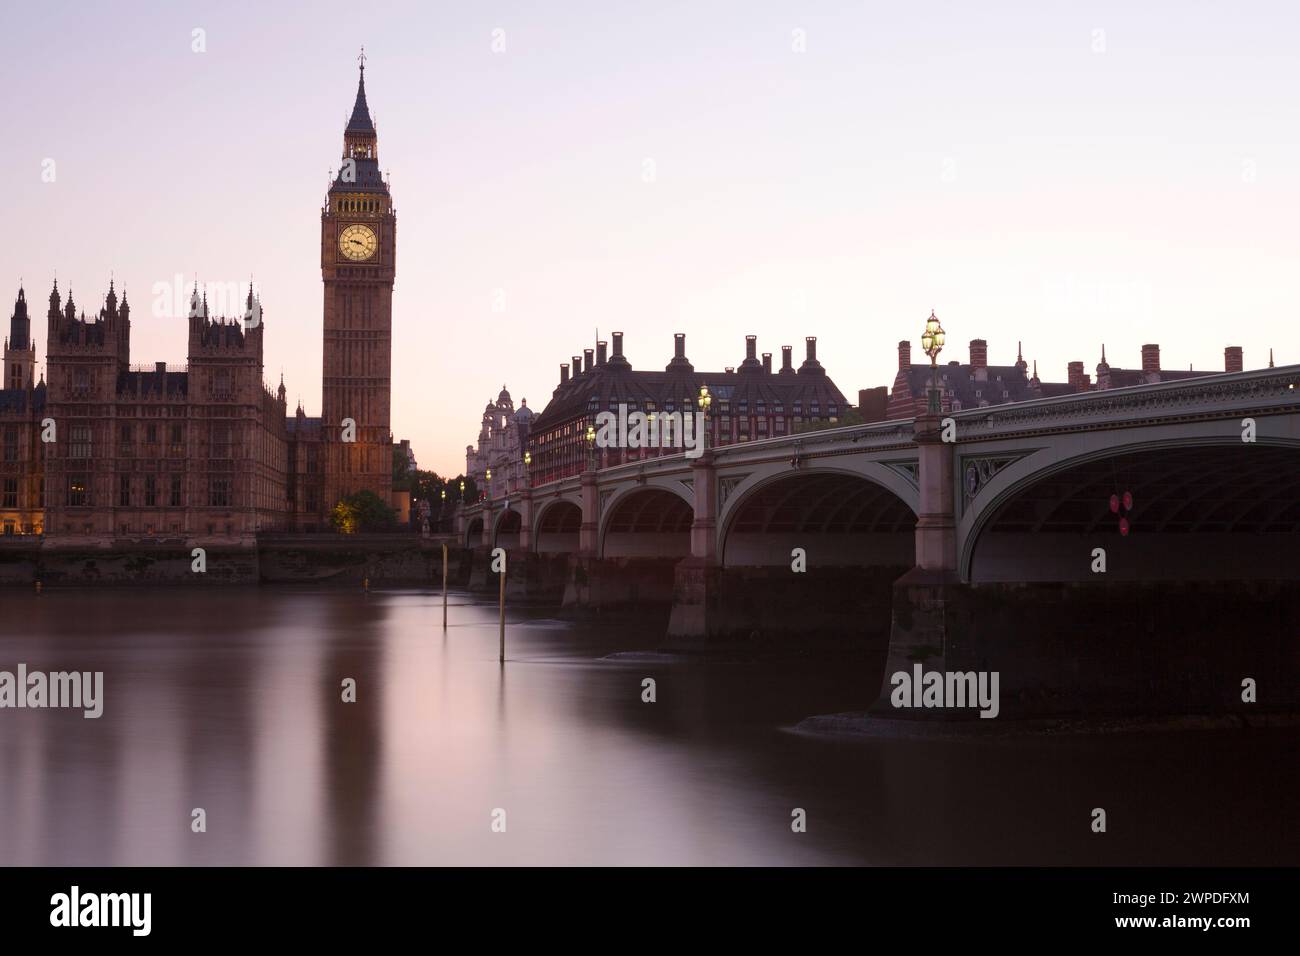 Regno Unito, Londra, il ponte di Wesminster e la torre dell'orologio di Big ben. Foto Stock